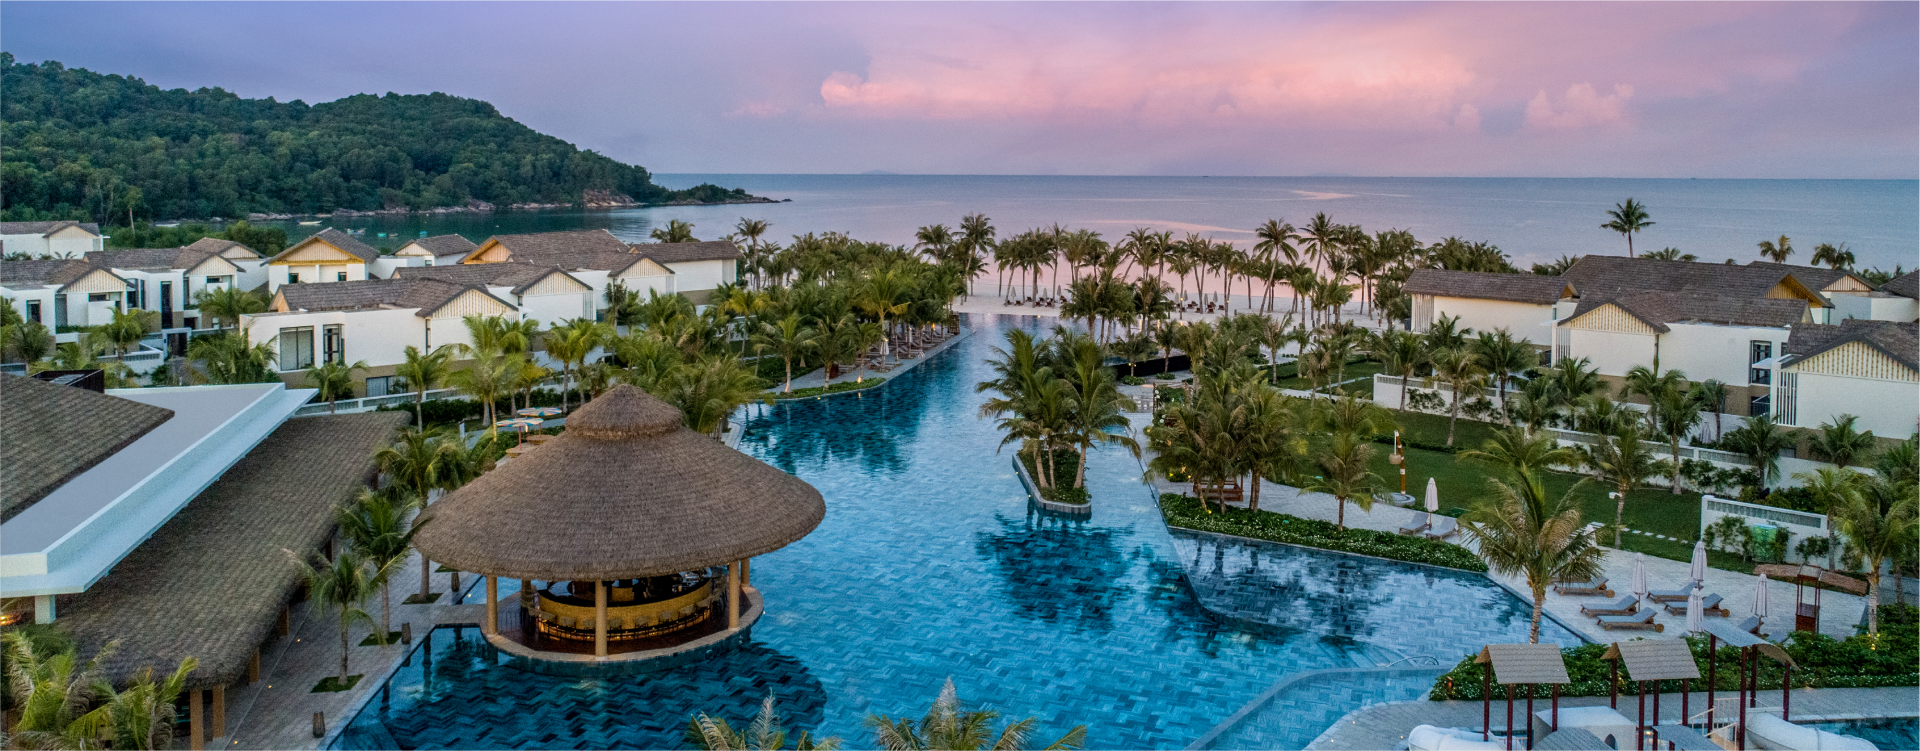 Bể bơi vô cực dài 120m bên cạnh Pool Bar tại New World Phú Quốc Resort 